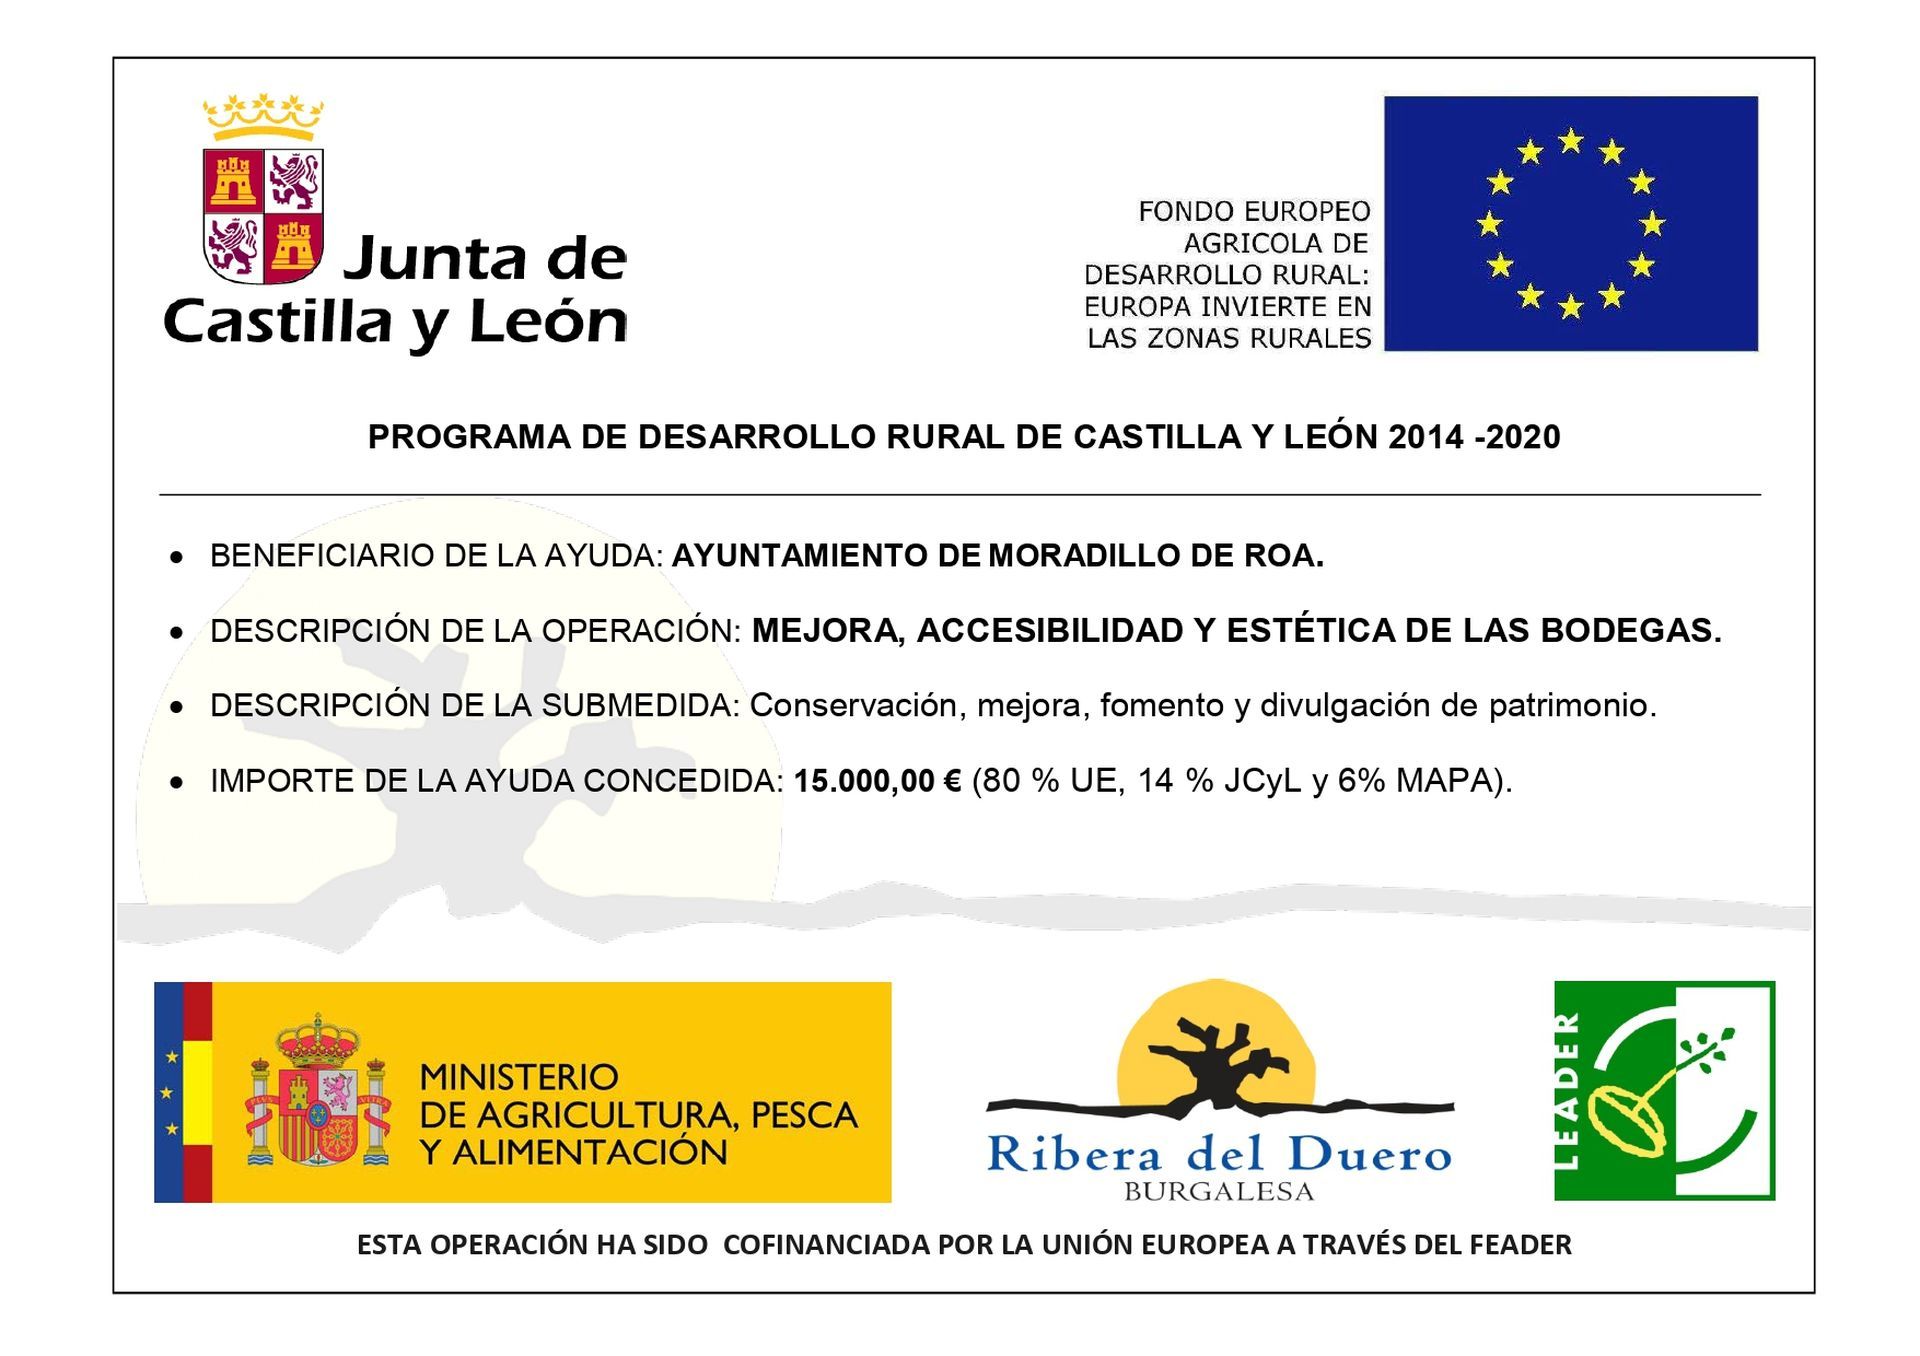 AYUDA LEADER 2014/2020 A.D.R.I. Ribera del Duero Burgalesa "mejora, accesibilidad y estética de las bodegas"